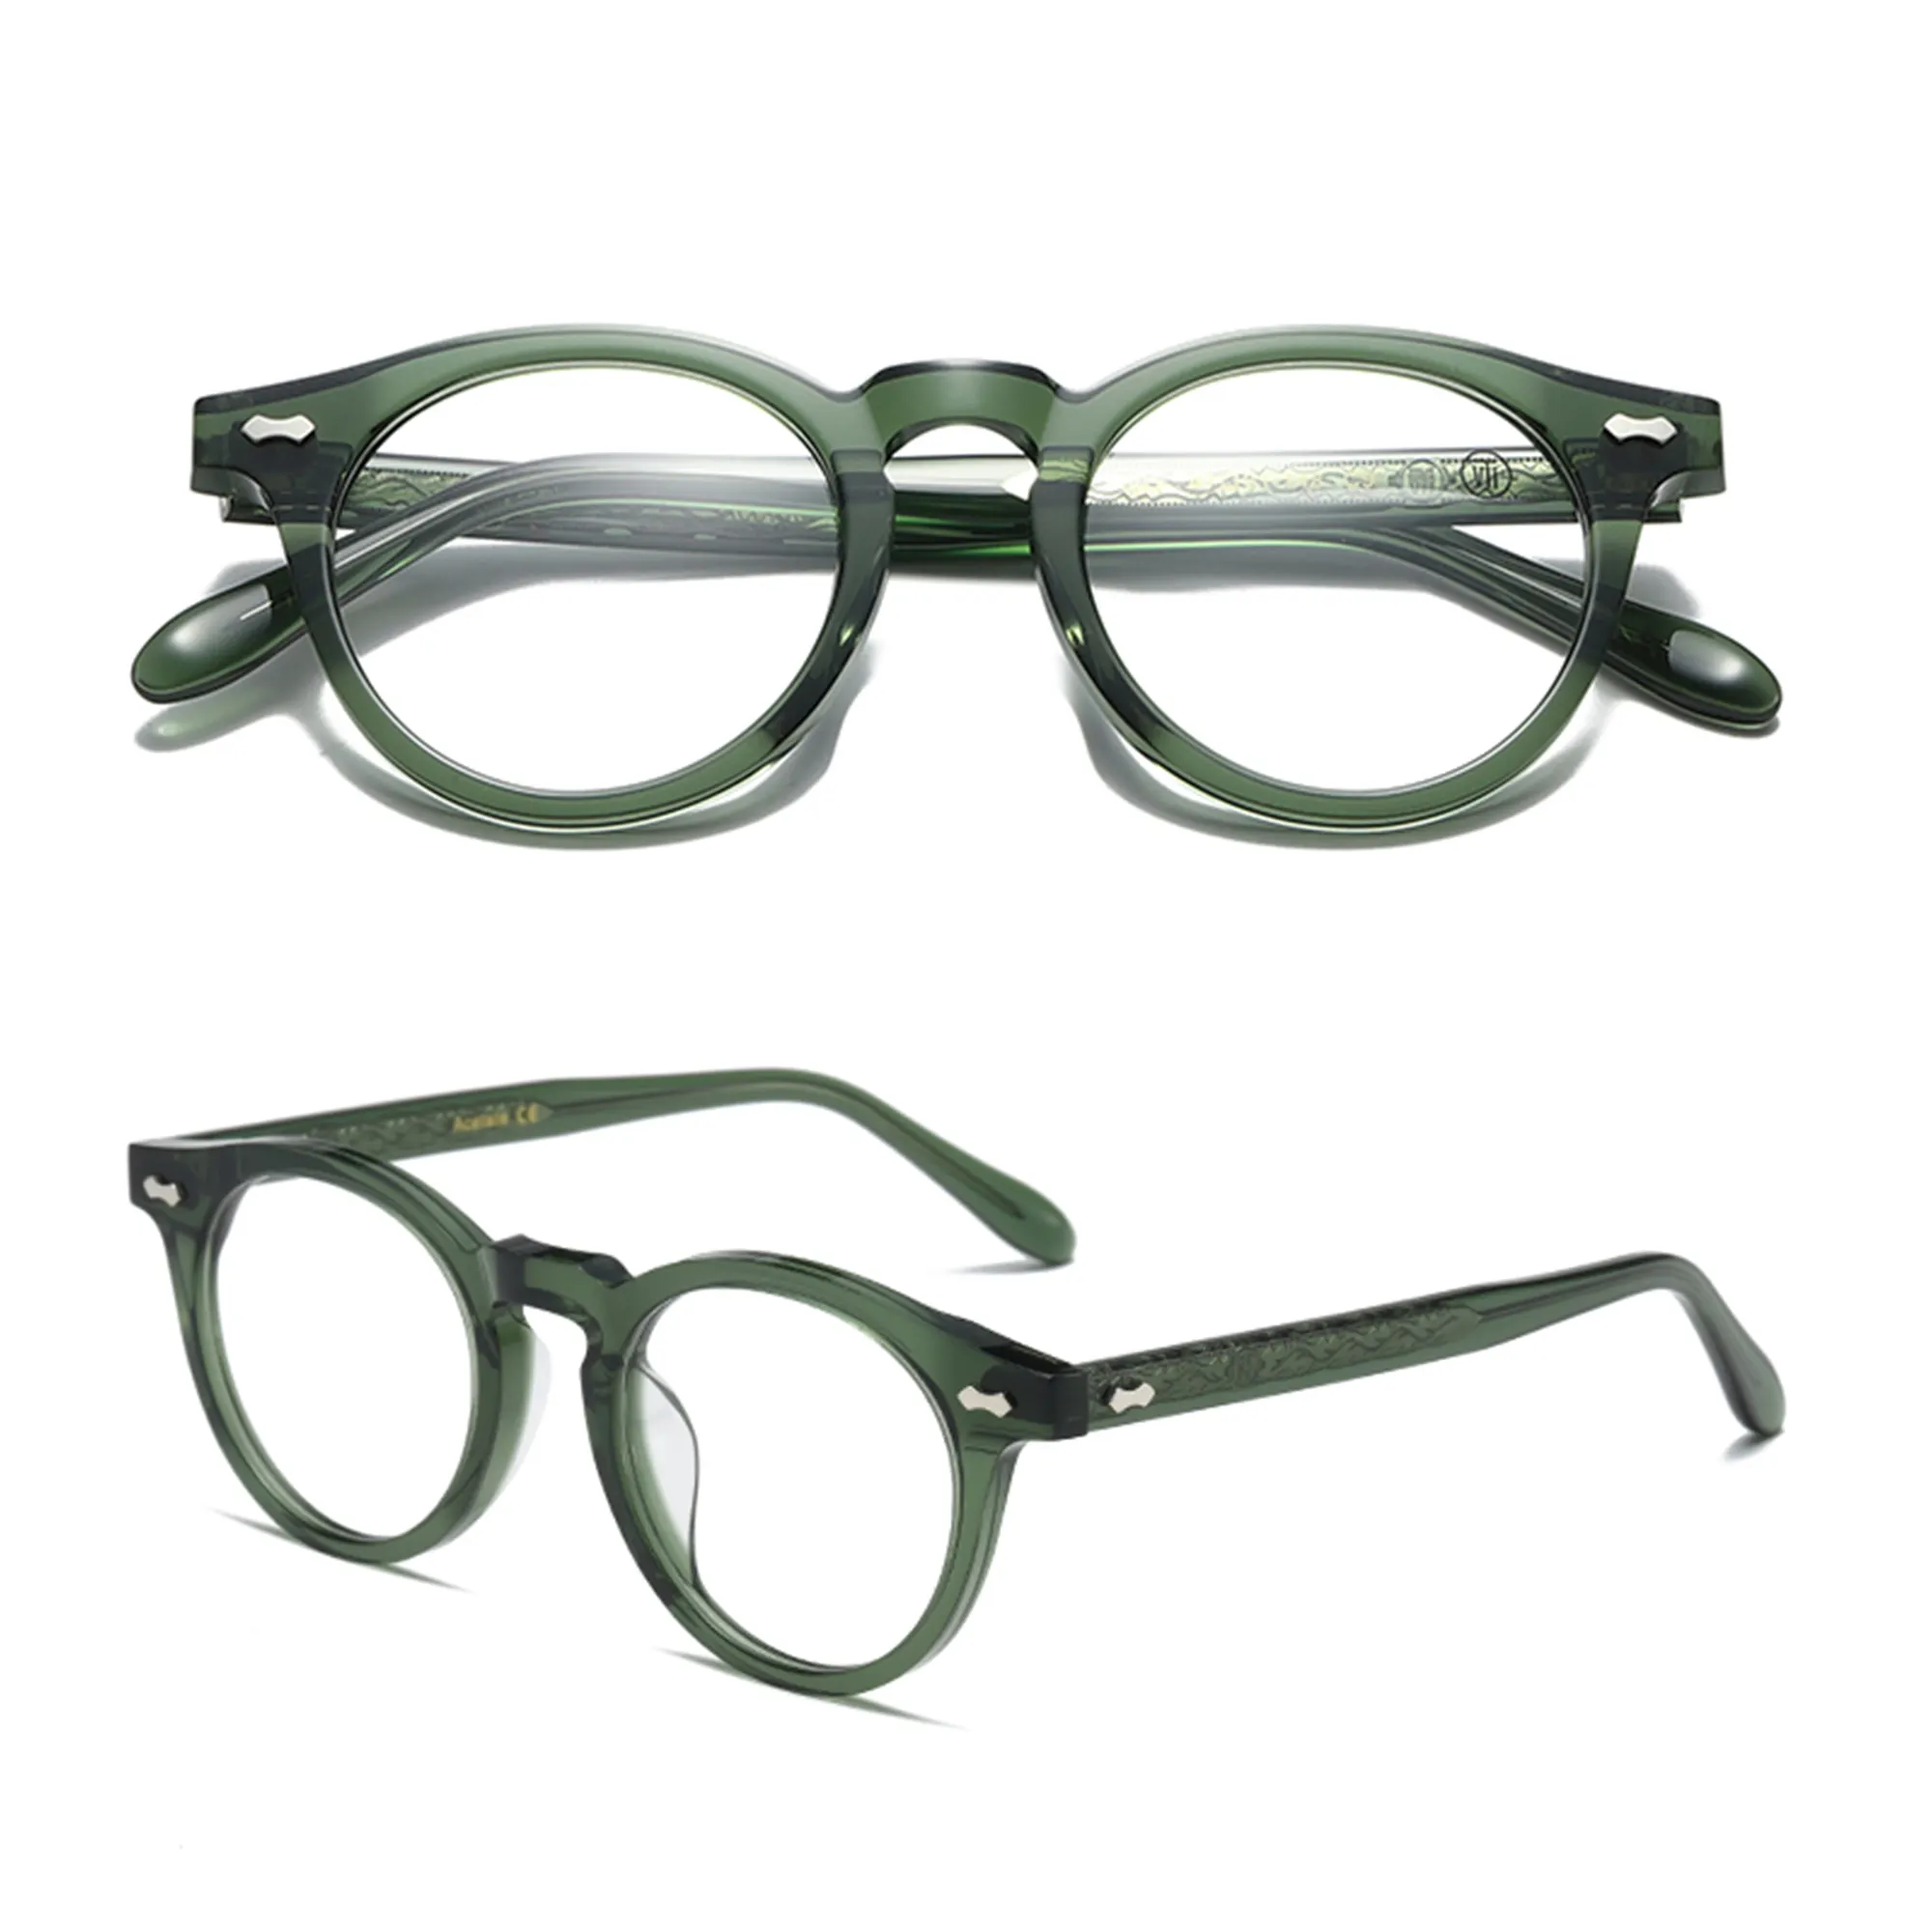 نظارات قراءة خفيفة الوزن عالية الجودة من Figroad مزودة بألوان زرقاء تحجب الضوء نظارات قراءة عصرية للنساء والرجال